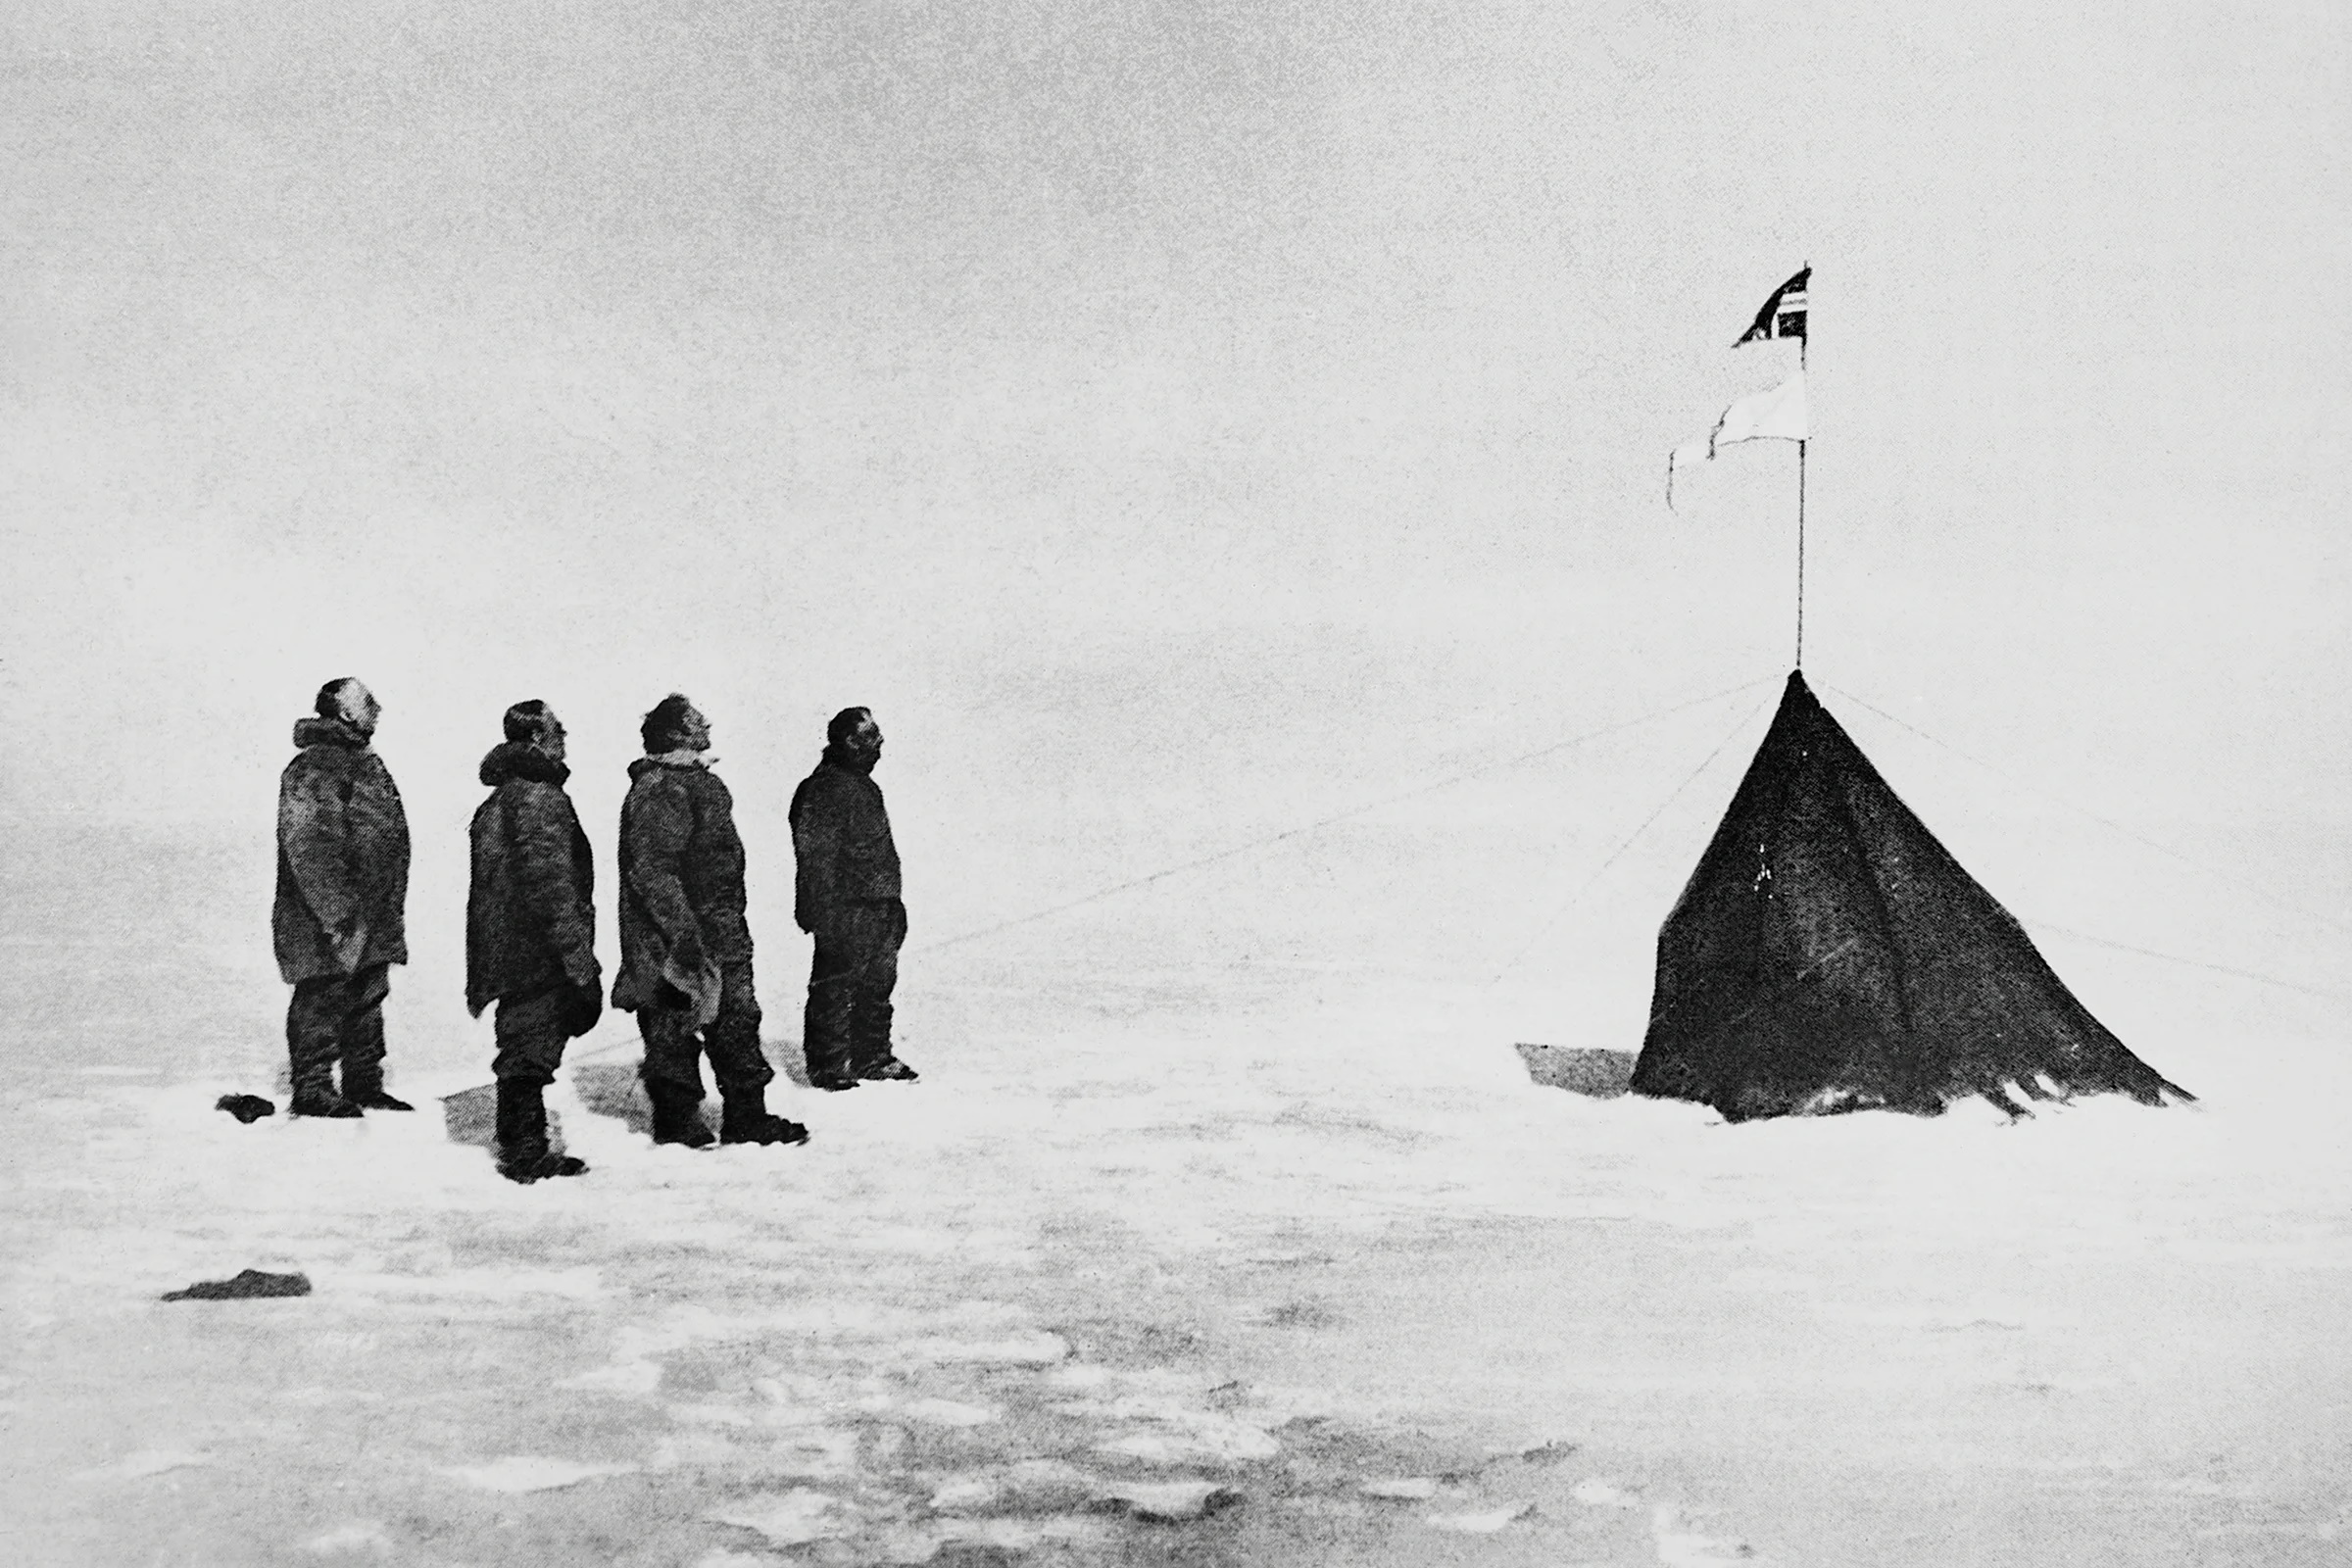 اولین کسی که به قطب جنوب رسید کی بود؟